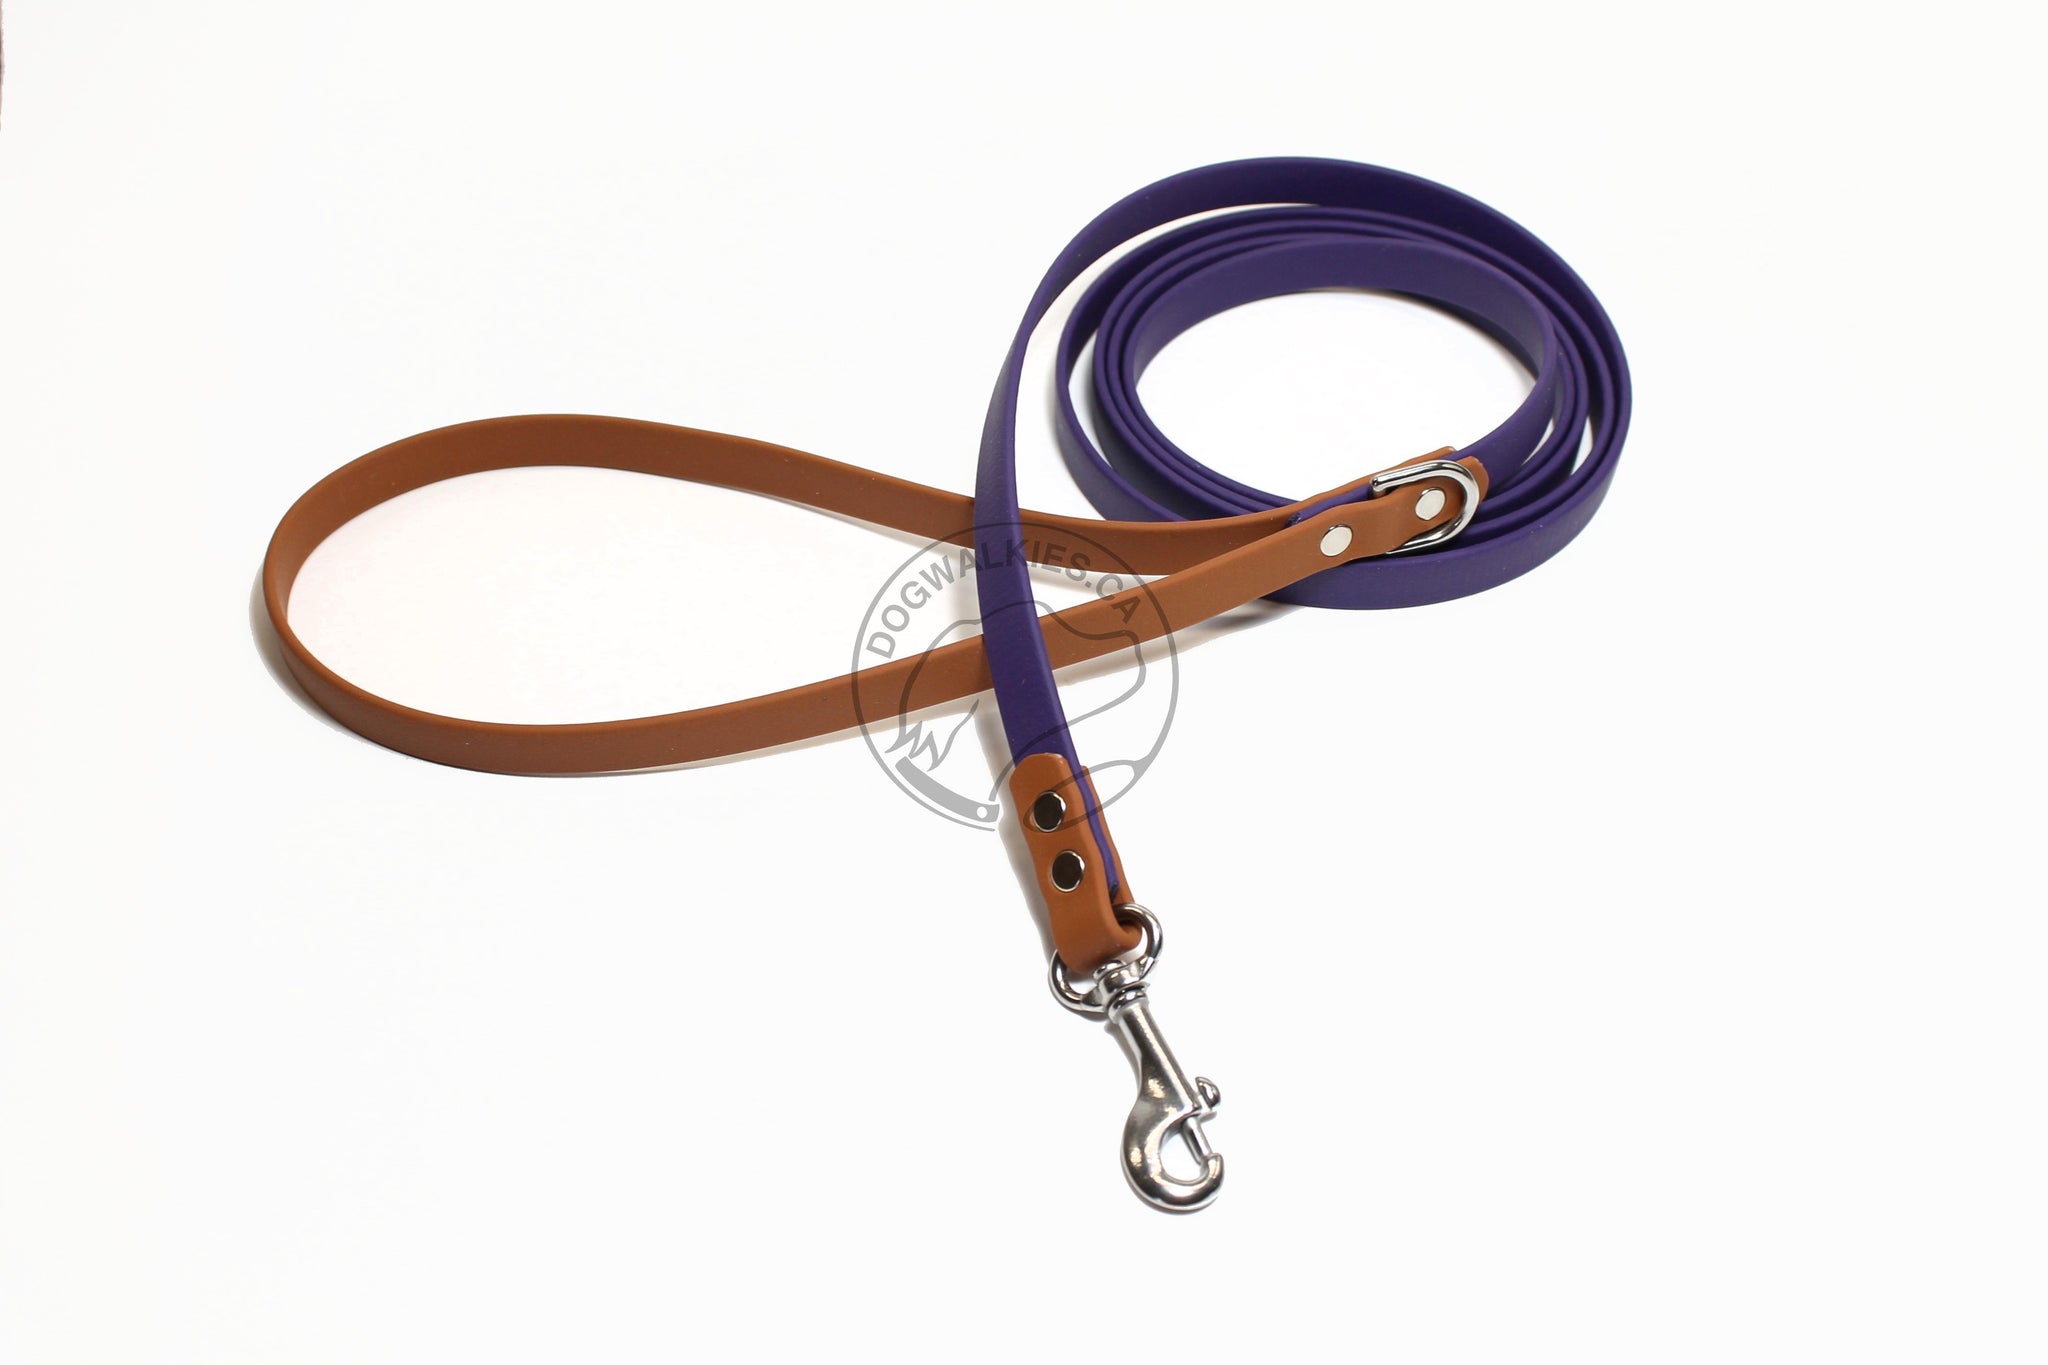 Two Tone Biothane Dog Leash - 1/2 (12mm) wide - Thin leash – Dog